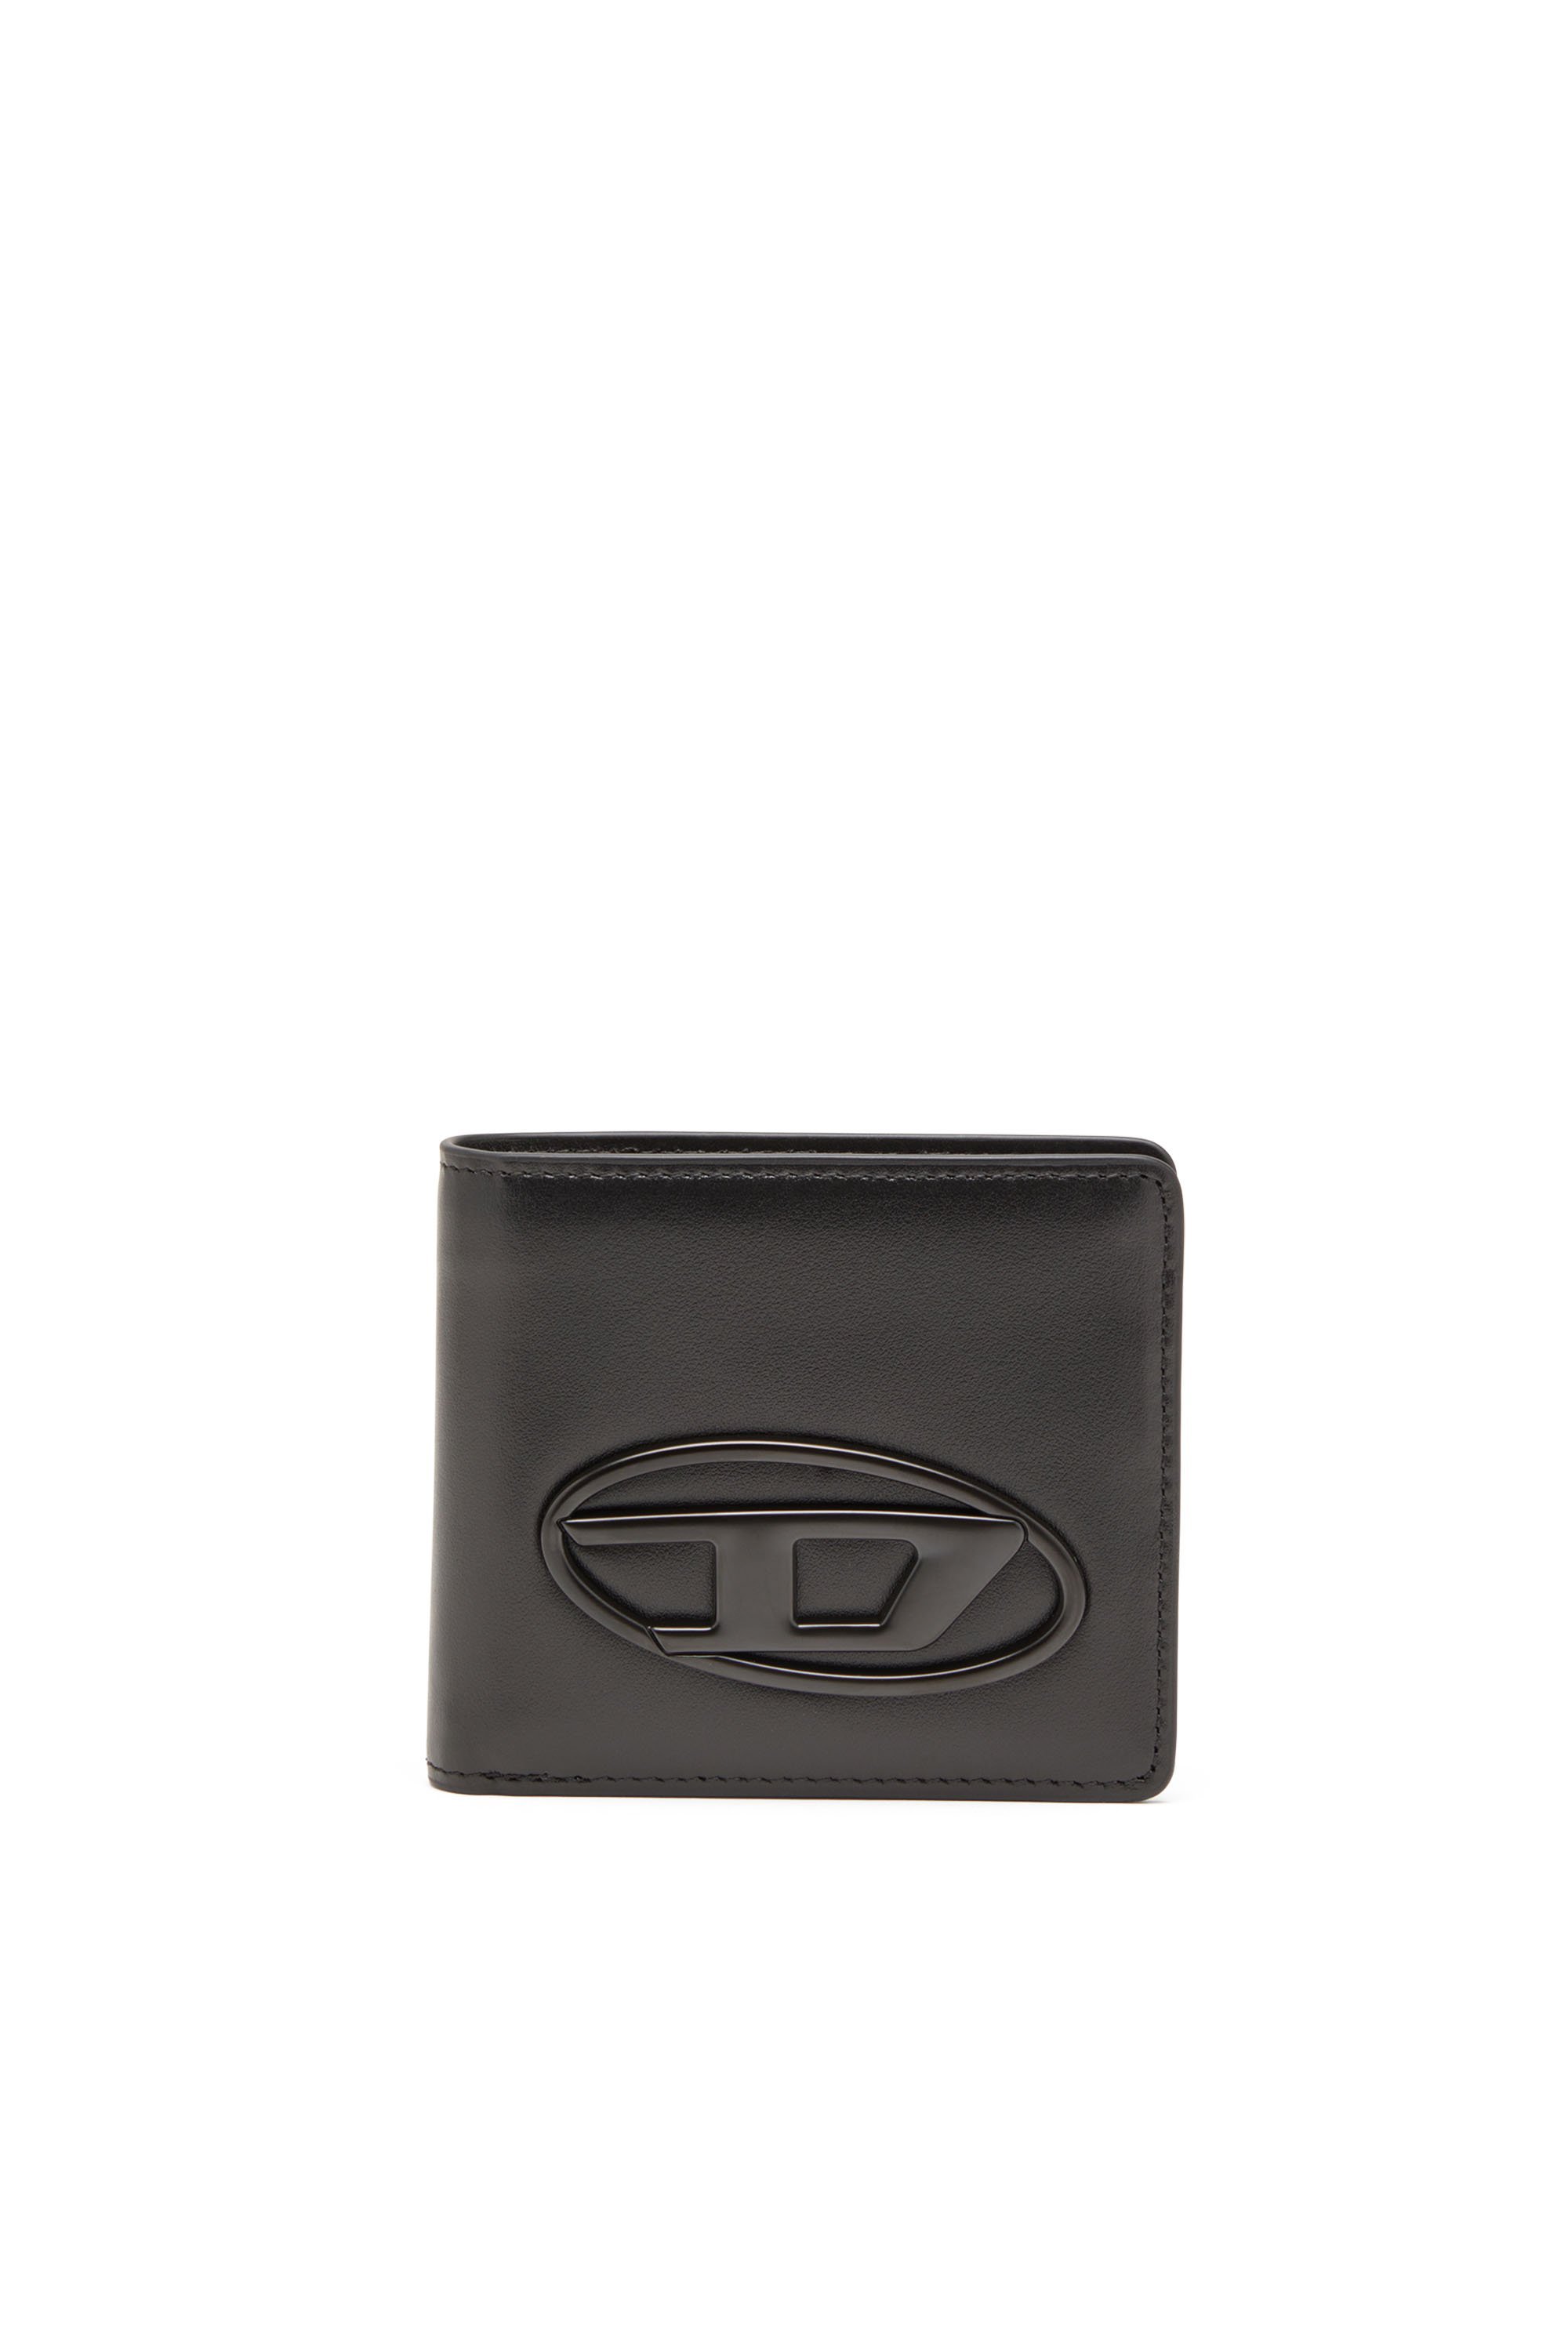 ディーゼル 二つ折り財布（メンズ） DIESEL メンズ 二つ折りウォレット レザー ディーゼル 財布・ポーチ・ケース 財布 ブラック【送料無料】